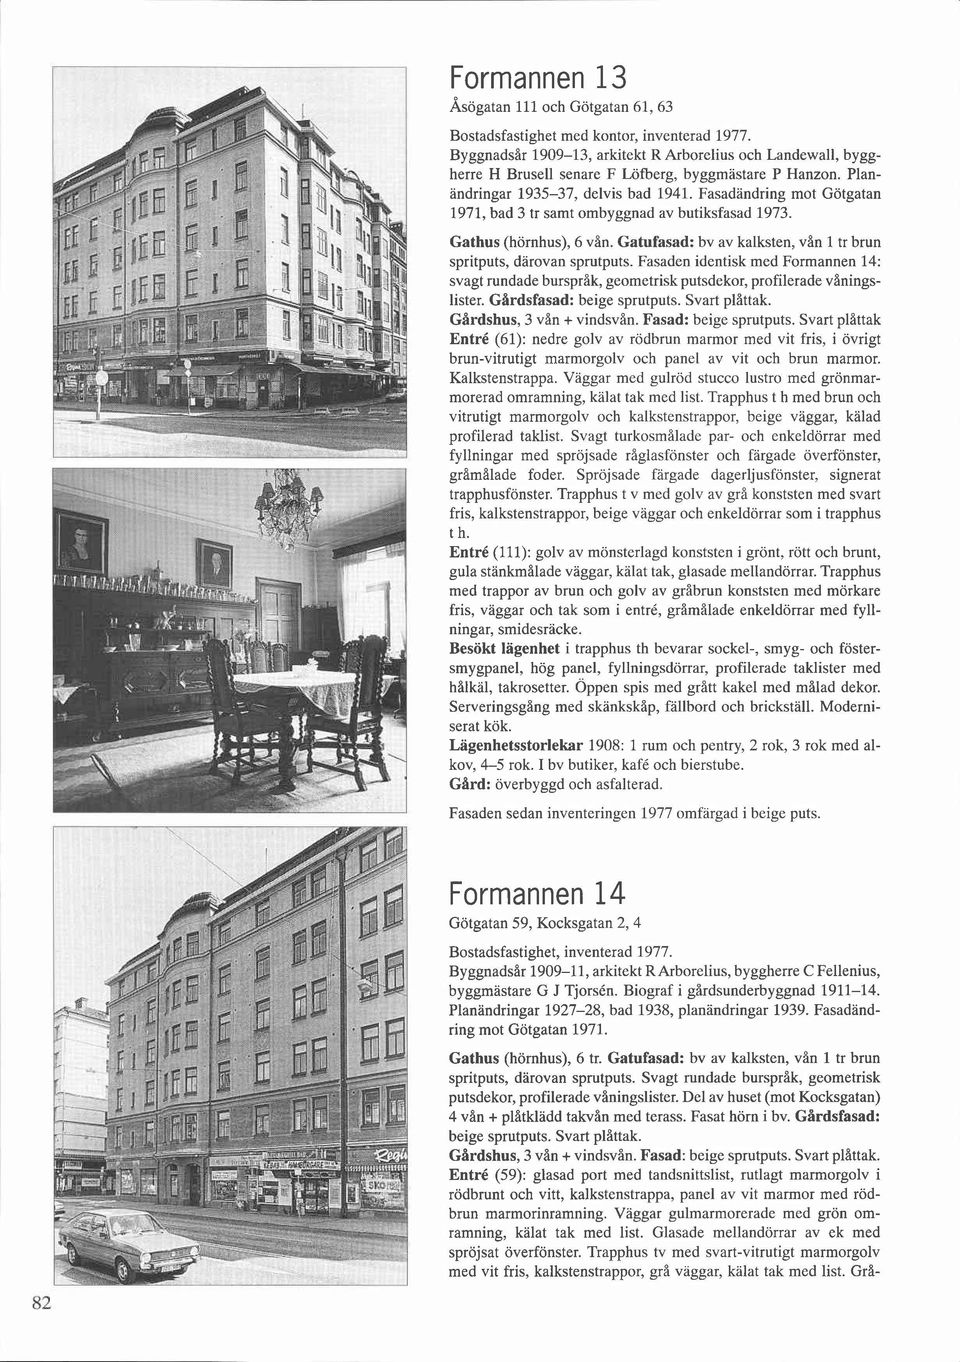 Fasadandring mot Götgatan 1971, bad 3 tr samt ombyggnad av butiksfasad 1973. Gathus (hörnhus), 6 vån. Gatufasad: bv av kalksten, vån 1 tr brun spritputs, darovan sprutputs.